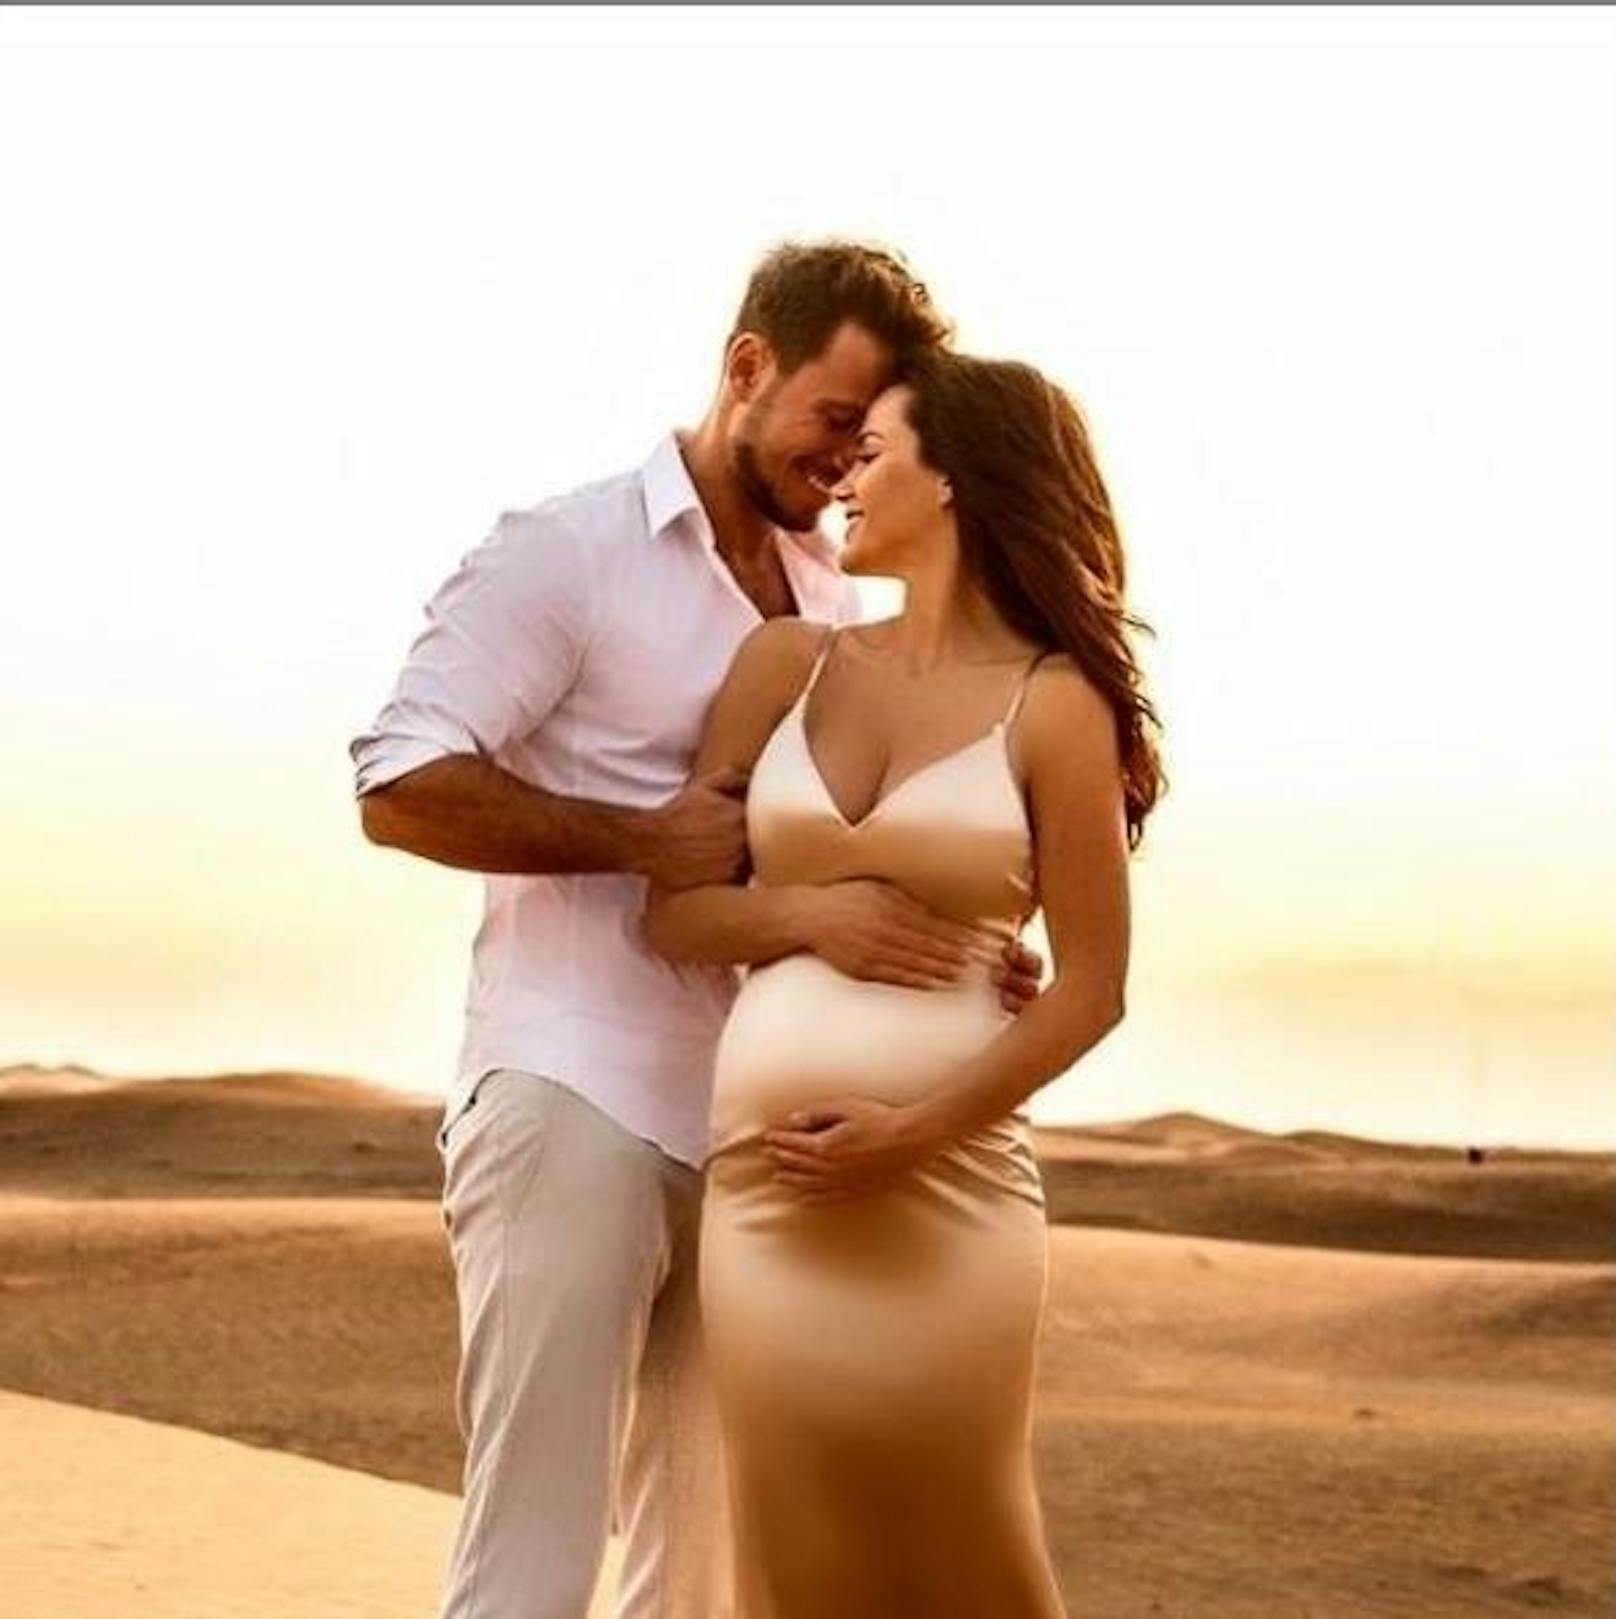 09.12.2019: Das "Bachelor"-Traumpaar Sebastian Pannek und Angelina Heger erwarten ihr erstes gemeinsames Kind, wie sie jetzt auf Instagram offenbart haben.